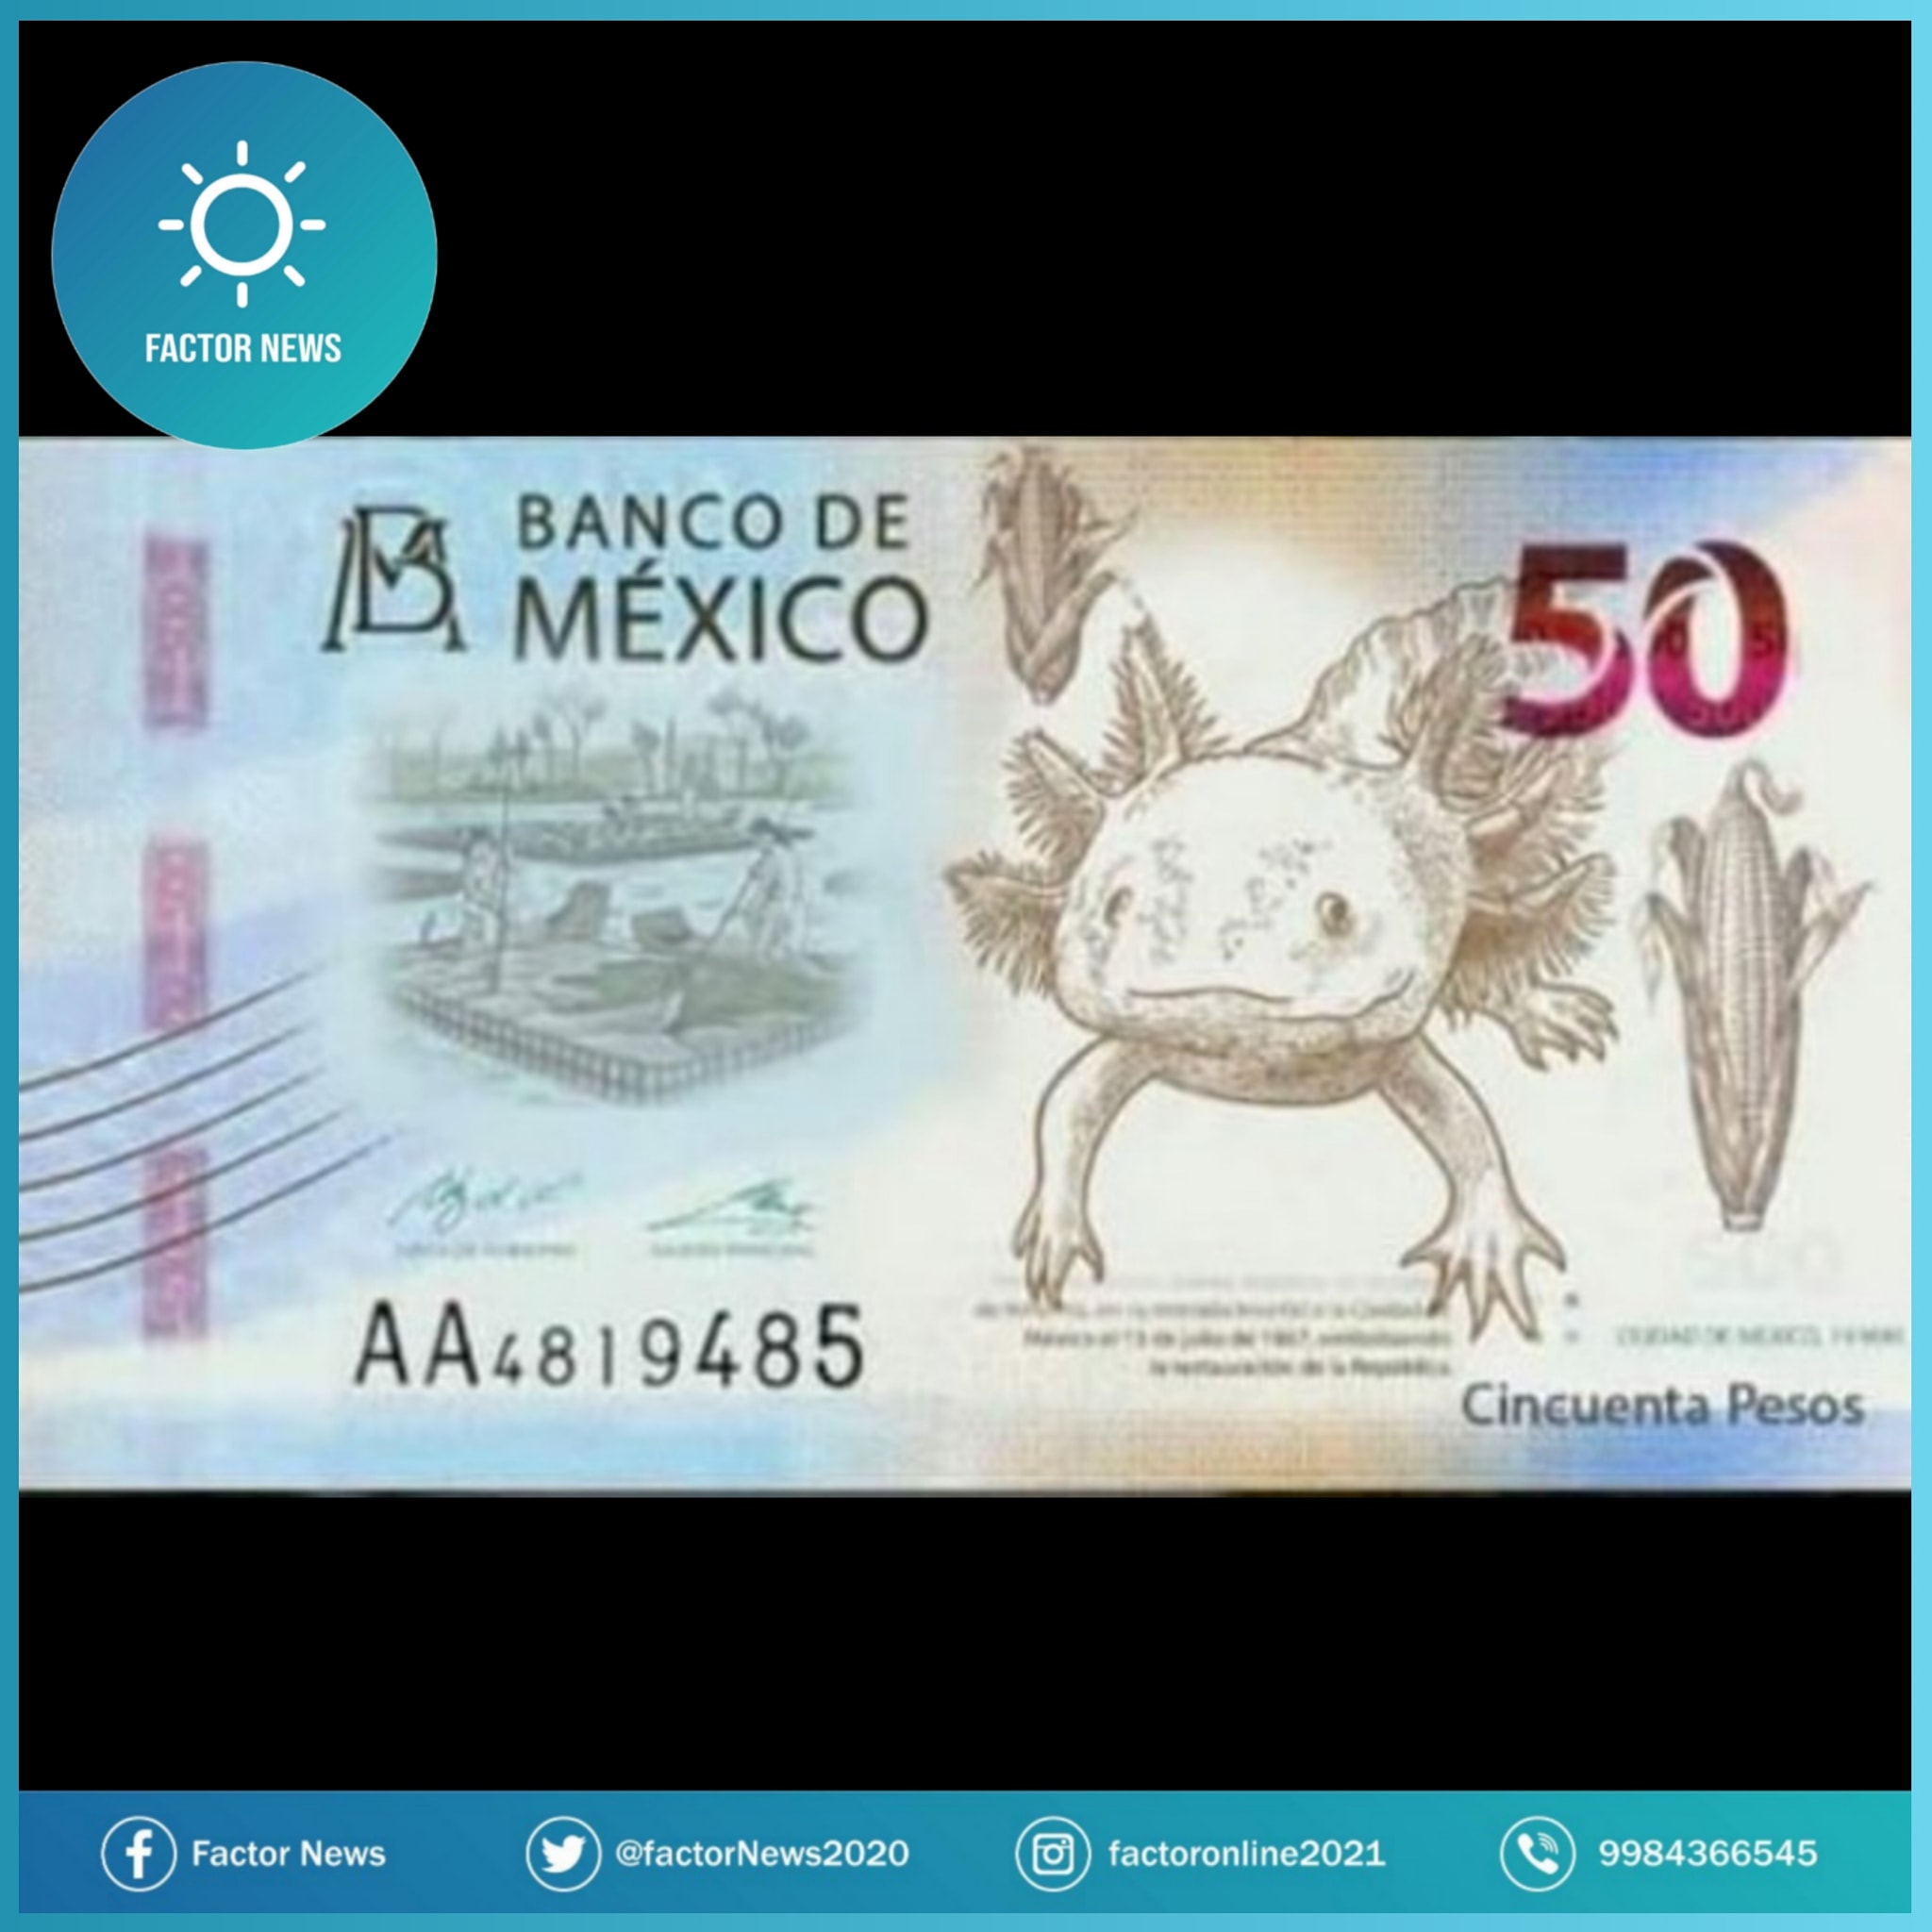 Habrá billete nuevo de 50 pesos informa Banco de México.